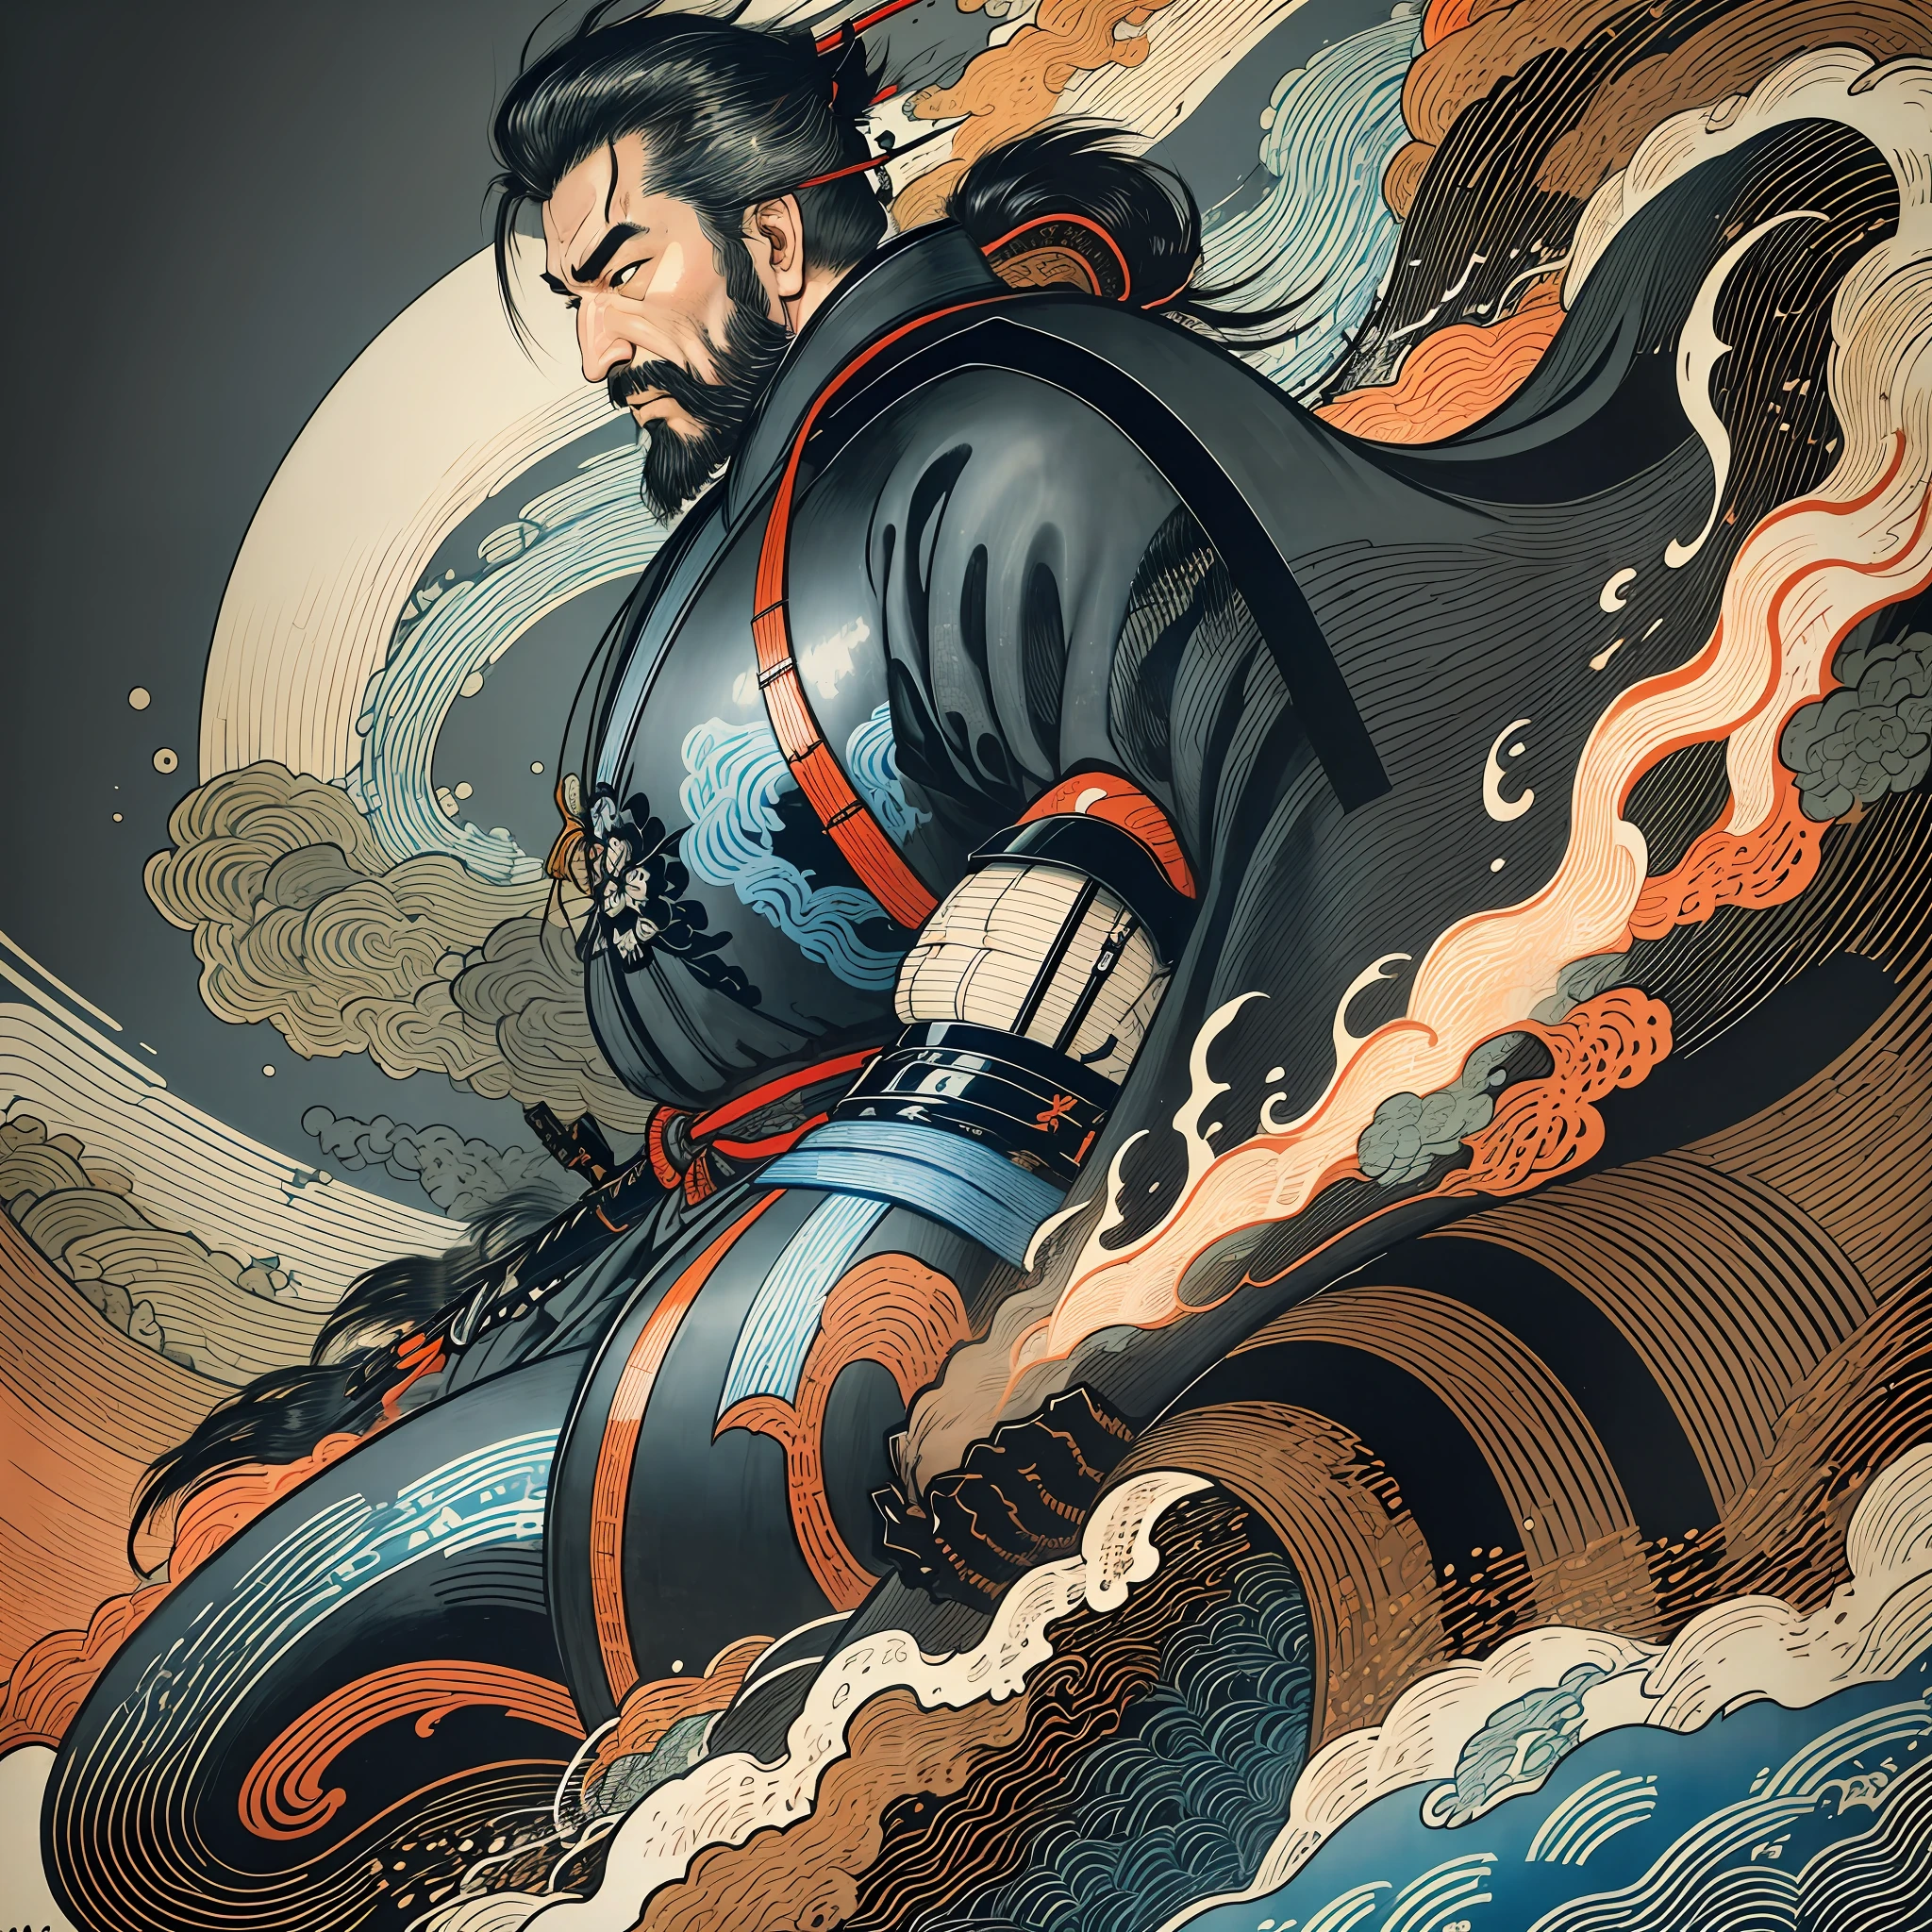 Es handelt sich um ein Ganzkörpergemälde mit natürlichen Farben und Strichzeichnungen im Stil von Katsushika Hokusai. Der Schwertkämpfer Miyamoto Musashi hat einen großen Körper wie ein starker Mann. Samurai von Japan. Er hat einen würdevollen, aber dennoch männlichen Ausdruck der Entschlossenheit, kurze schwarze Haare, und eine kurze, gestutzter Bart. Sein Oberkörper ist mit einem schwarzen Kimono bedeckt und sein Hakama ist knielang. In seiner rechten Hand hält er ein japanisches Schwert. in höchster Qualität, im hochauflösenden Ukiyo-e-Stil Blitze und wirbelnde Flammen des Meisterwerks. Miyamoto Musashi steht mit Gesicht und Körper nach vorne gerichtet, sein Rücken gerade.